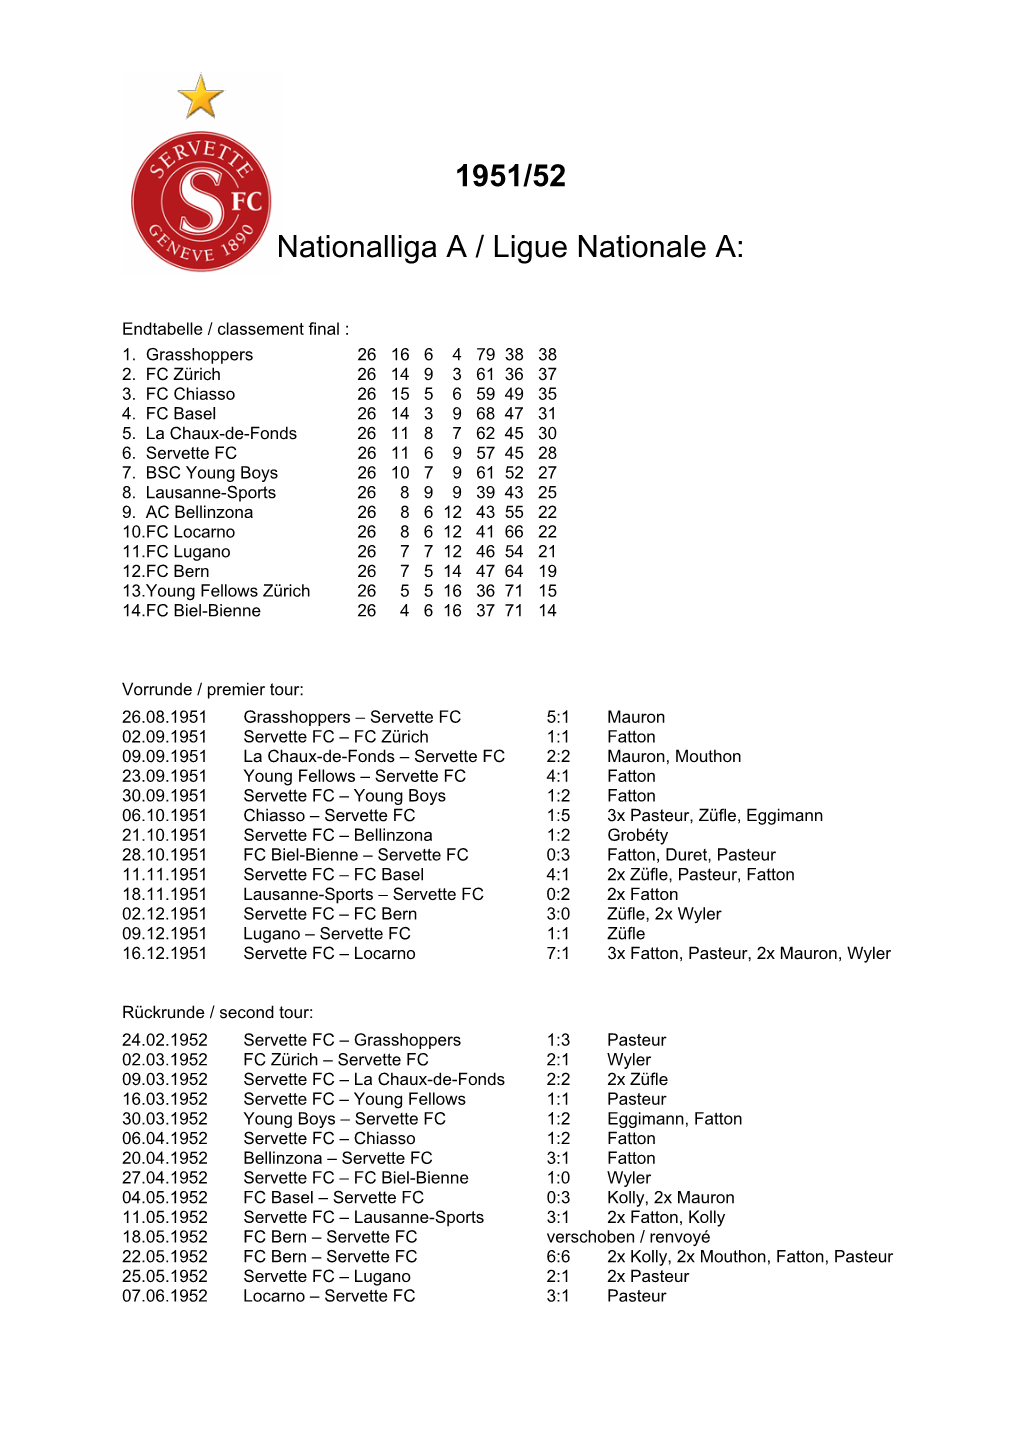 1951/52 Nationalliga a / Ligue Nationale A